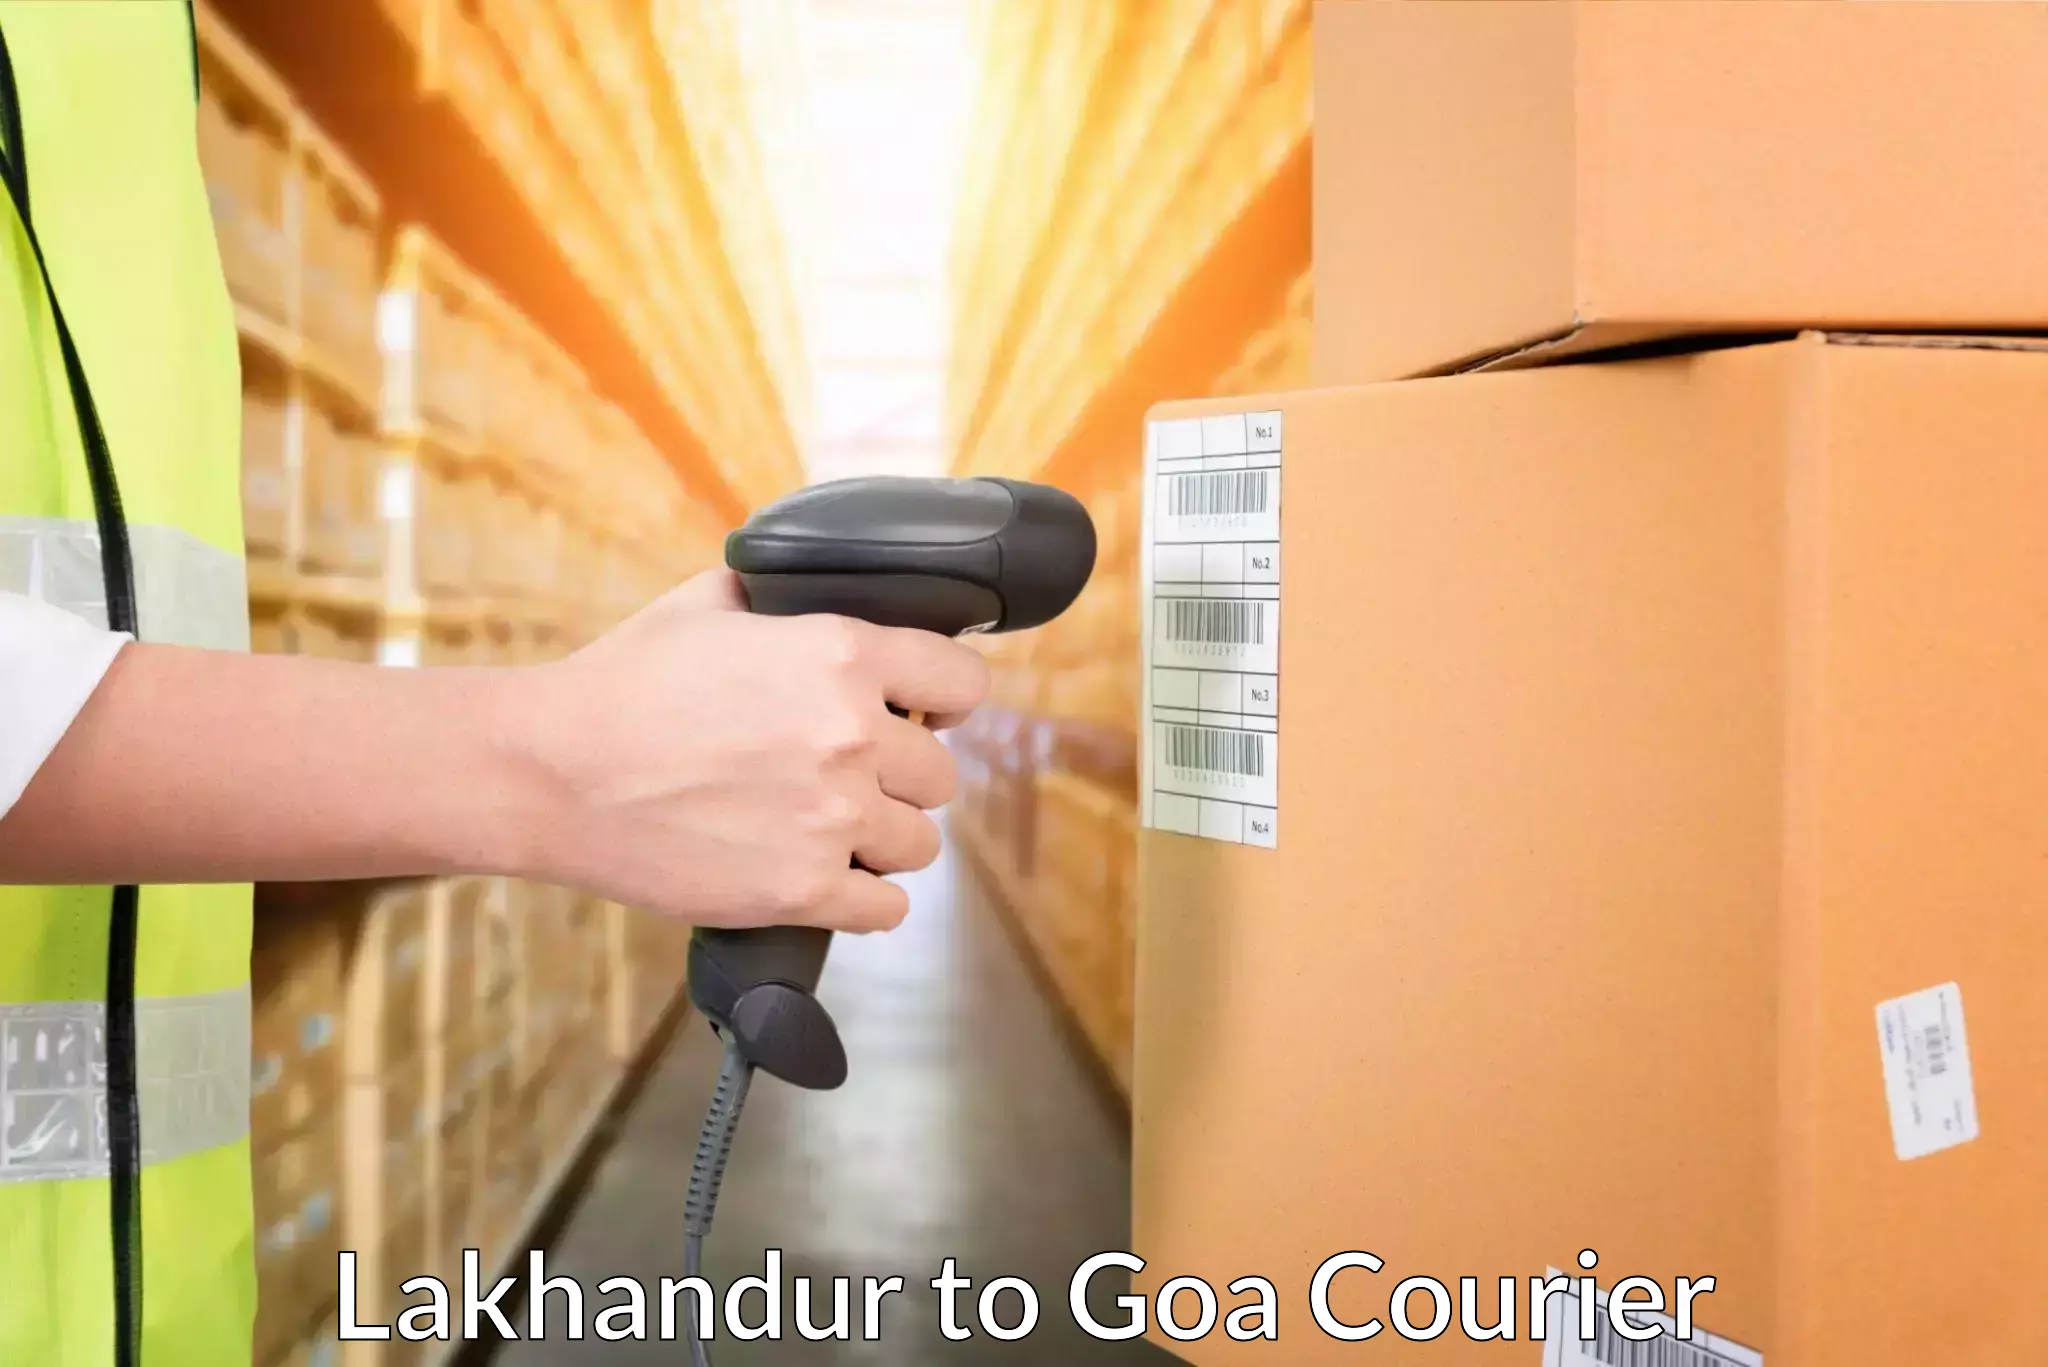 Global shipping networks Lakhandur to Ponda